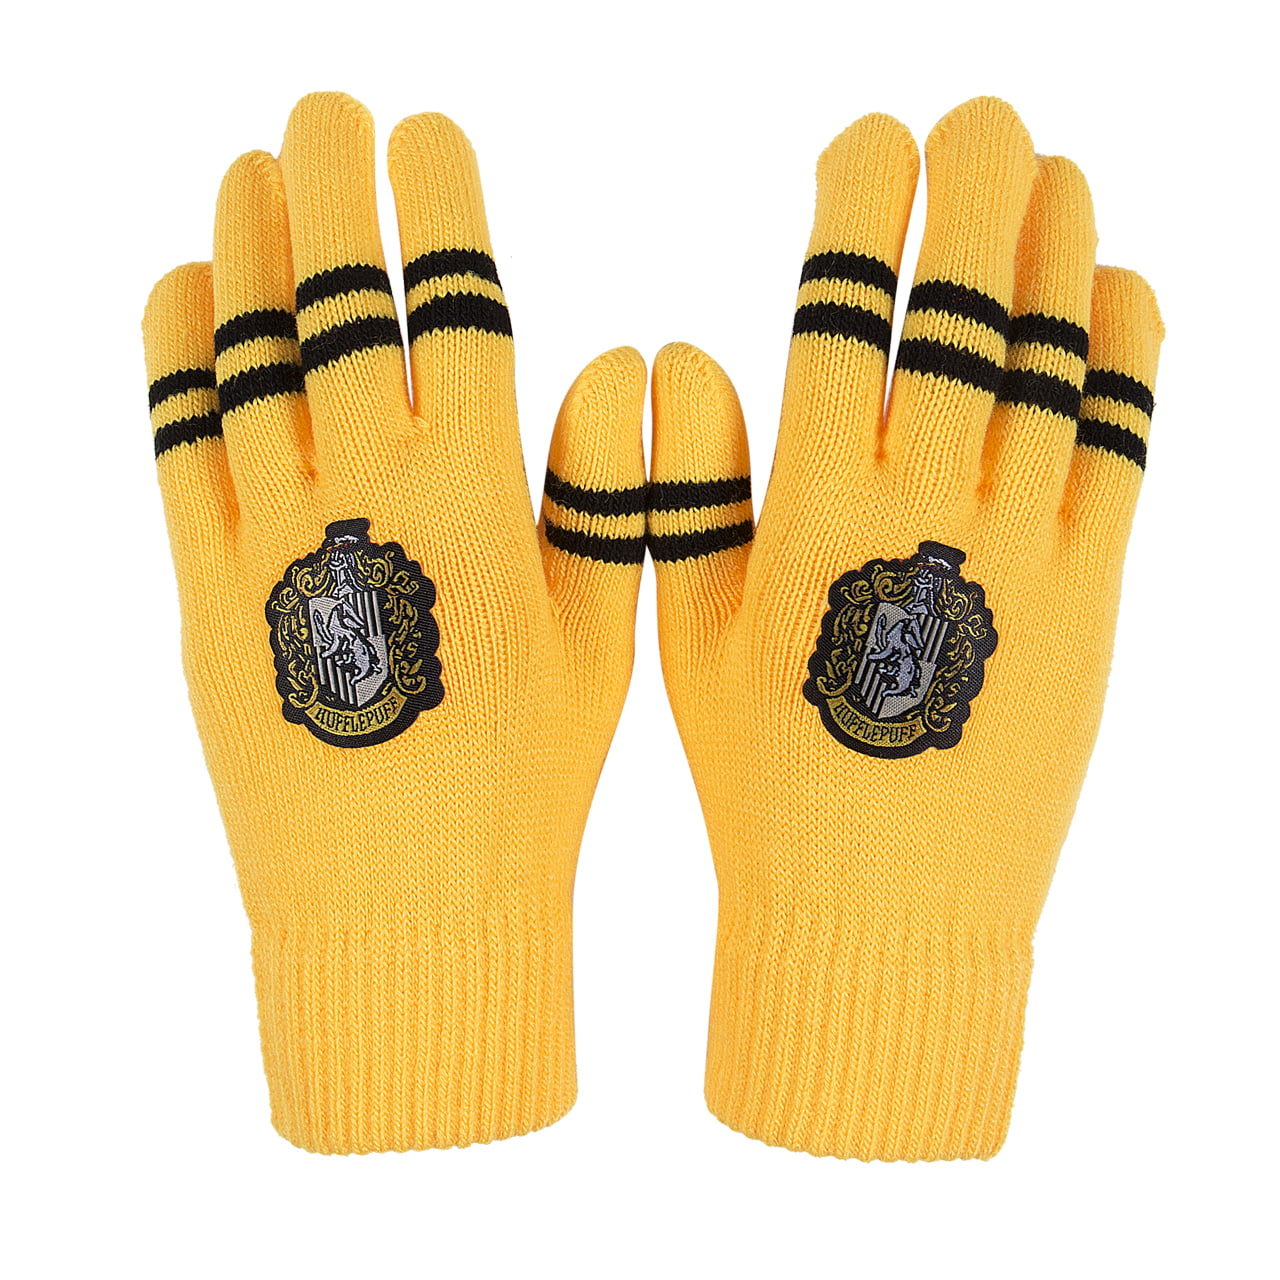 Unisex Men Women Thermal Knitted Stripe Plain Warm Full Finger Winter Gloves 